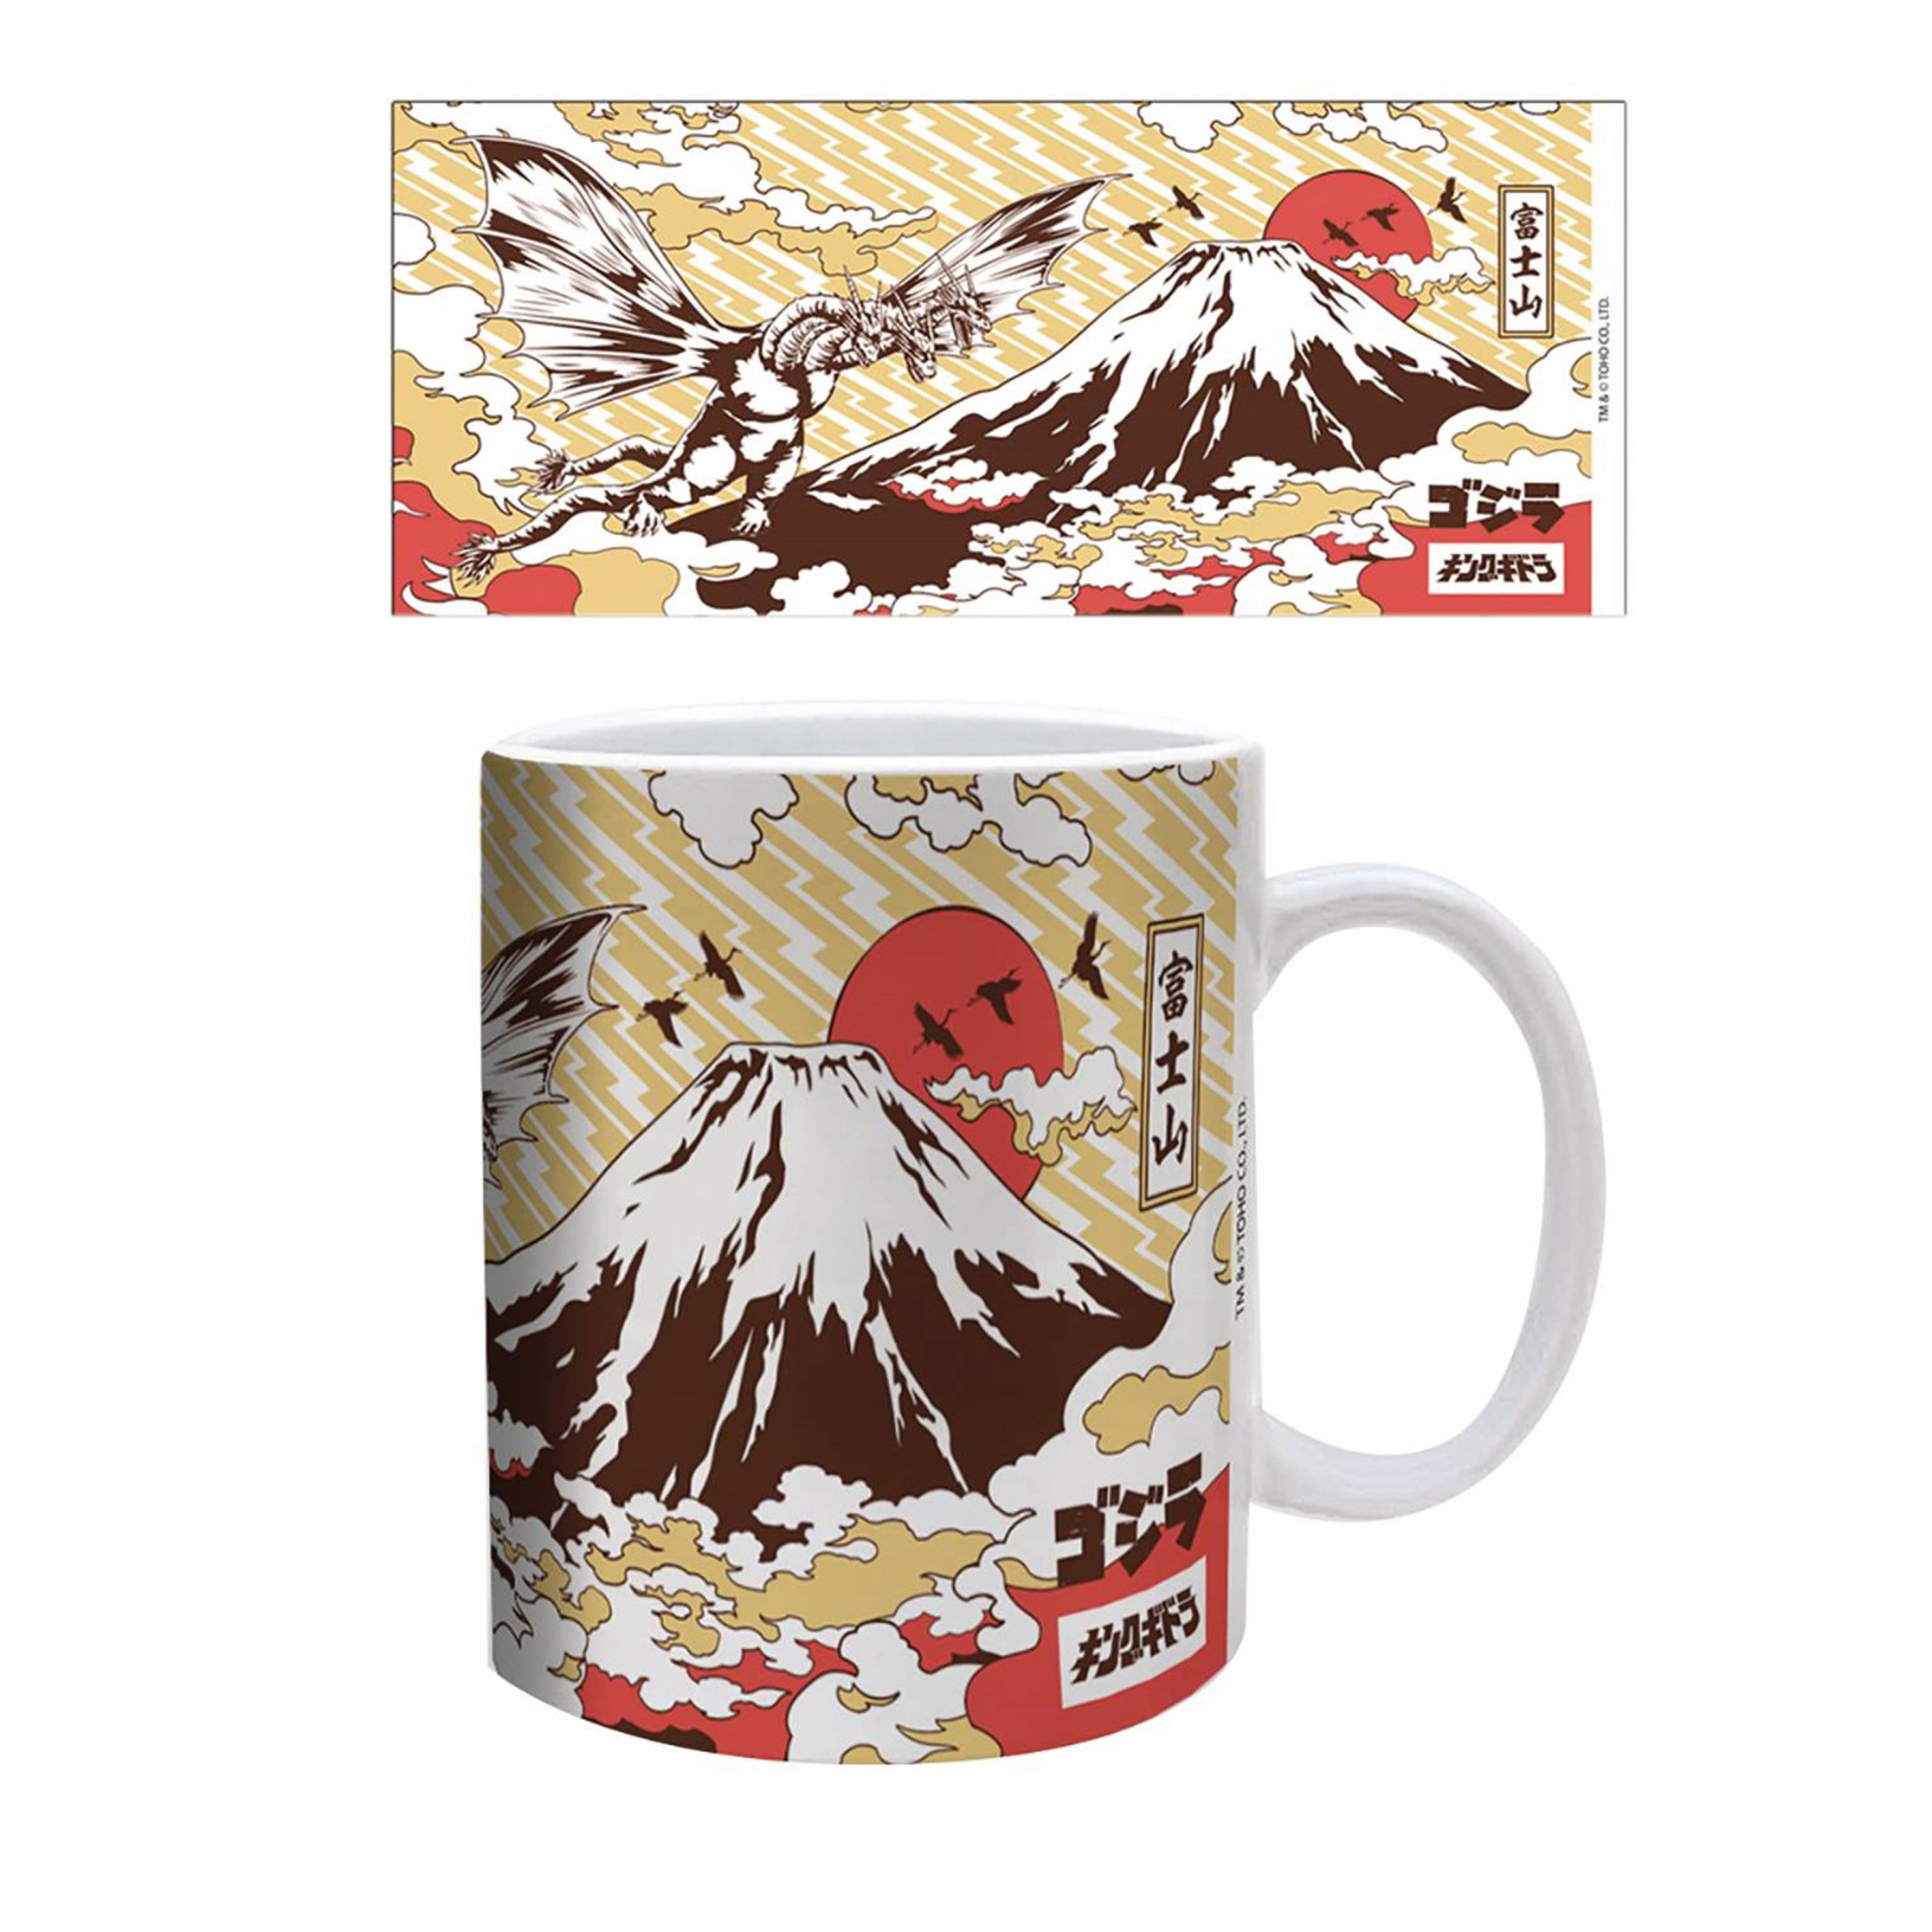 Godzilla Mt. Fuji Traditional Art 11 oz. Ceramic Mug